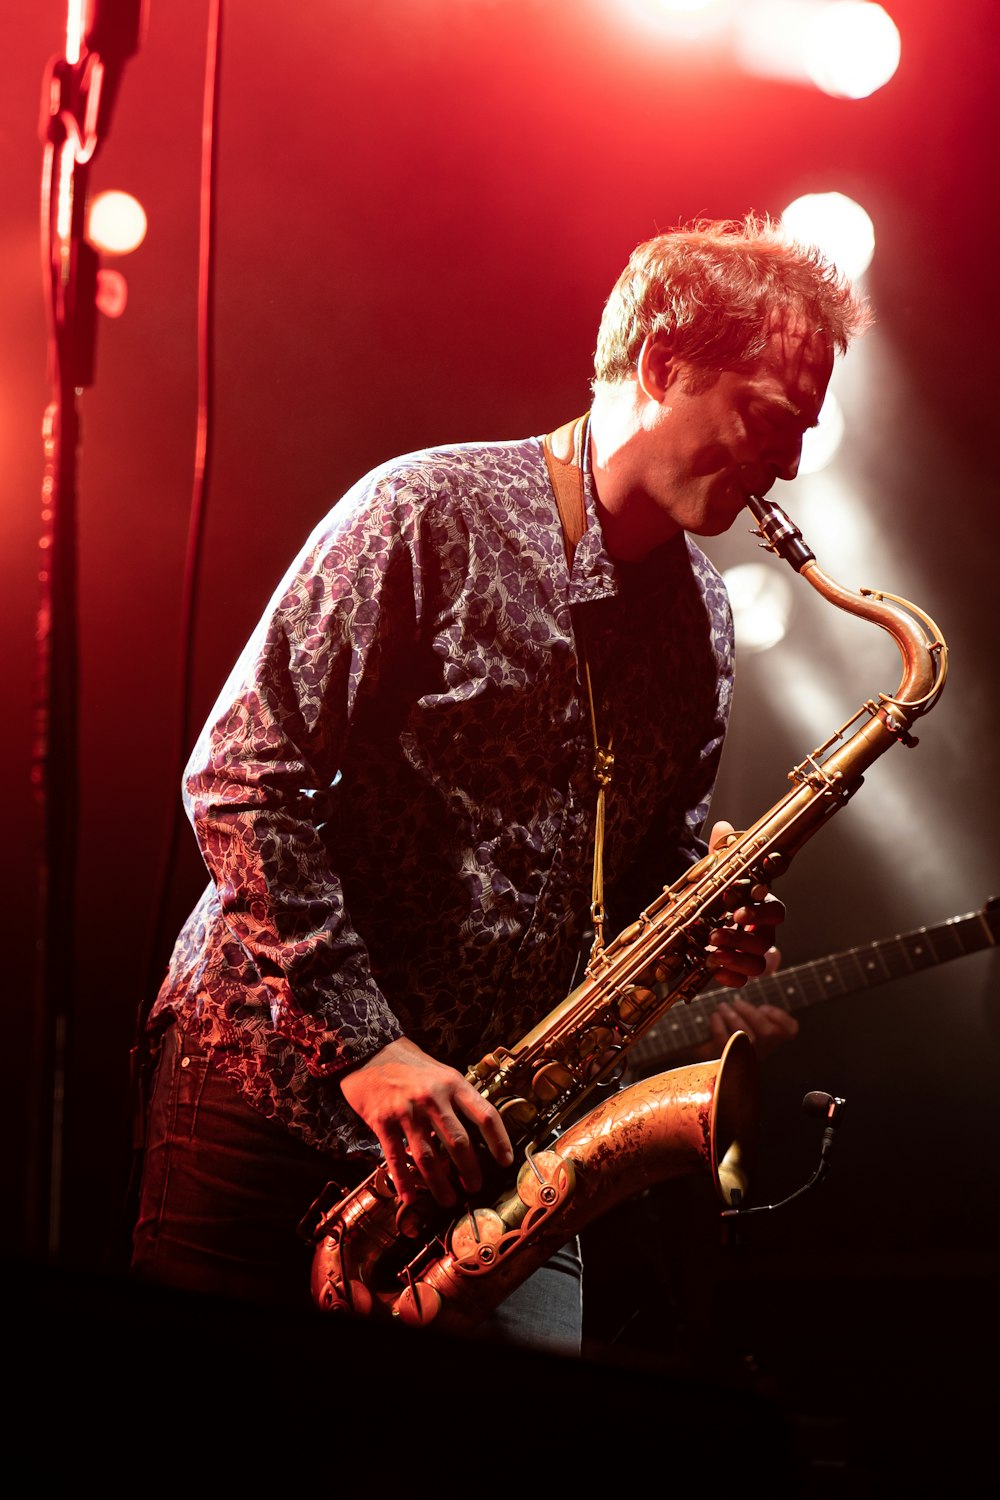 homme jouant du saxophone